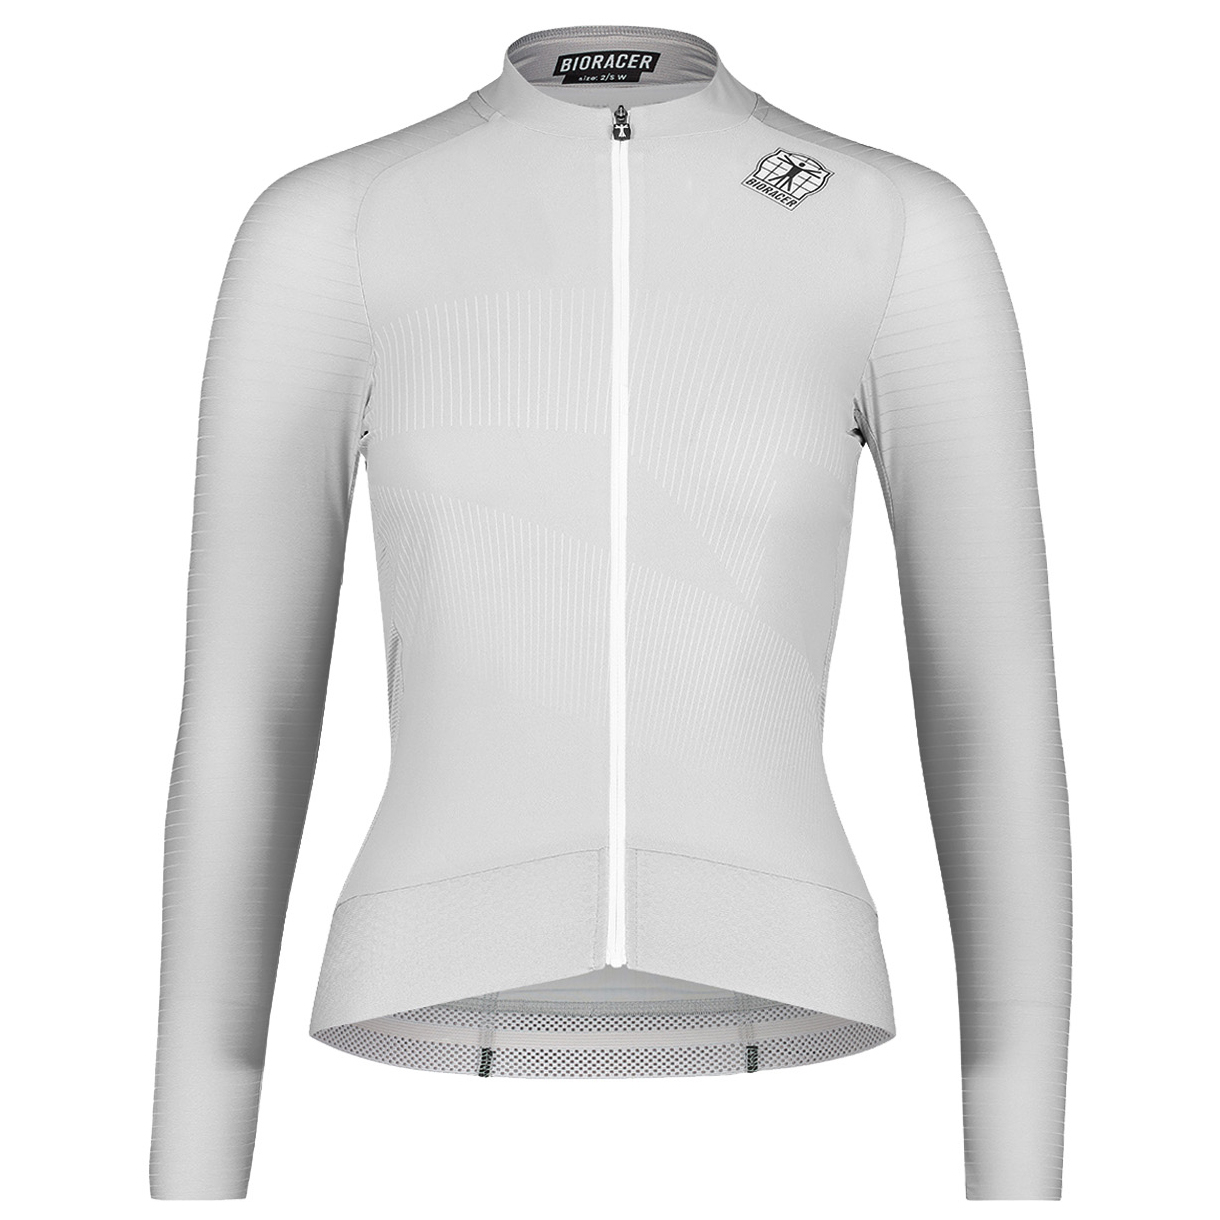 Велосипедный трикотаж Bioracer Women's Epic L/S Jersey, серый профессиональный костюм strava для езды на велосипеде новинка женский командный костюм езды длинными рукавами дышащий костюм езды горном ве